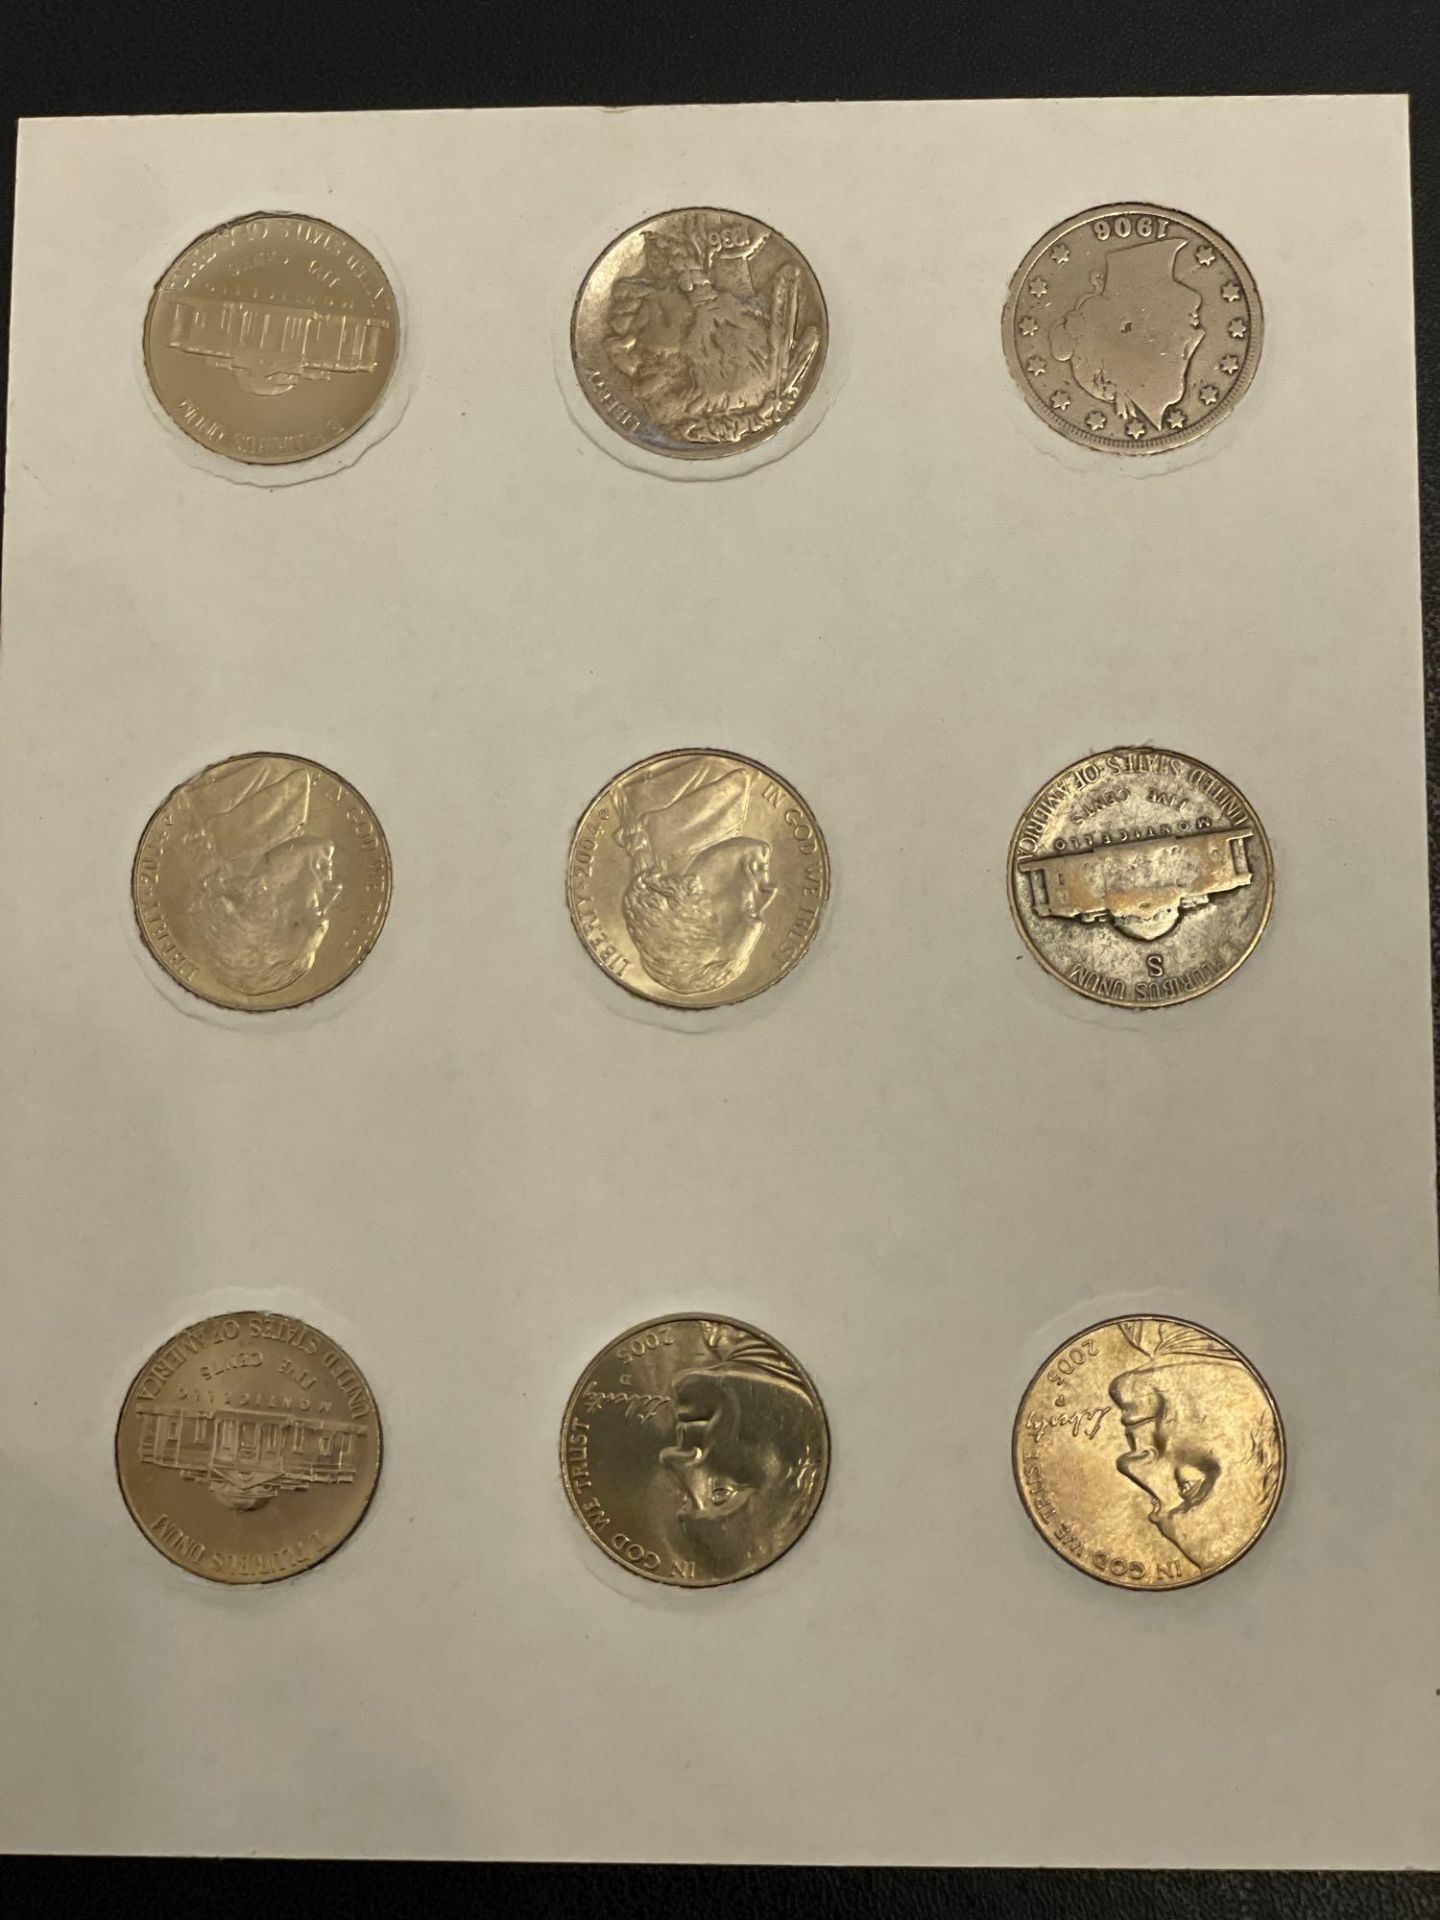 100 Years of American Nickels - Image 4 of 4